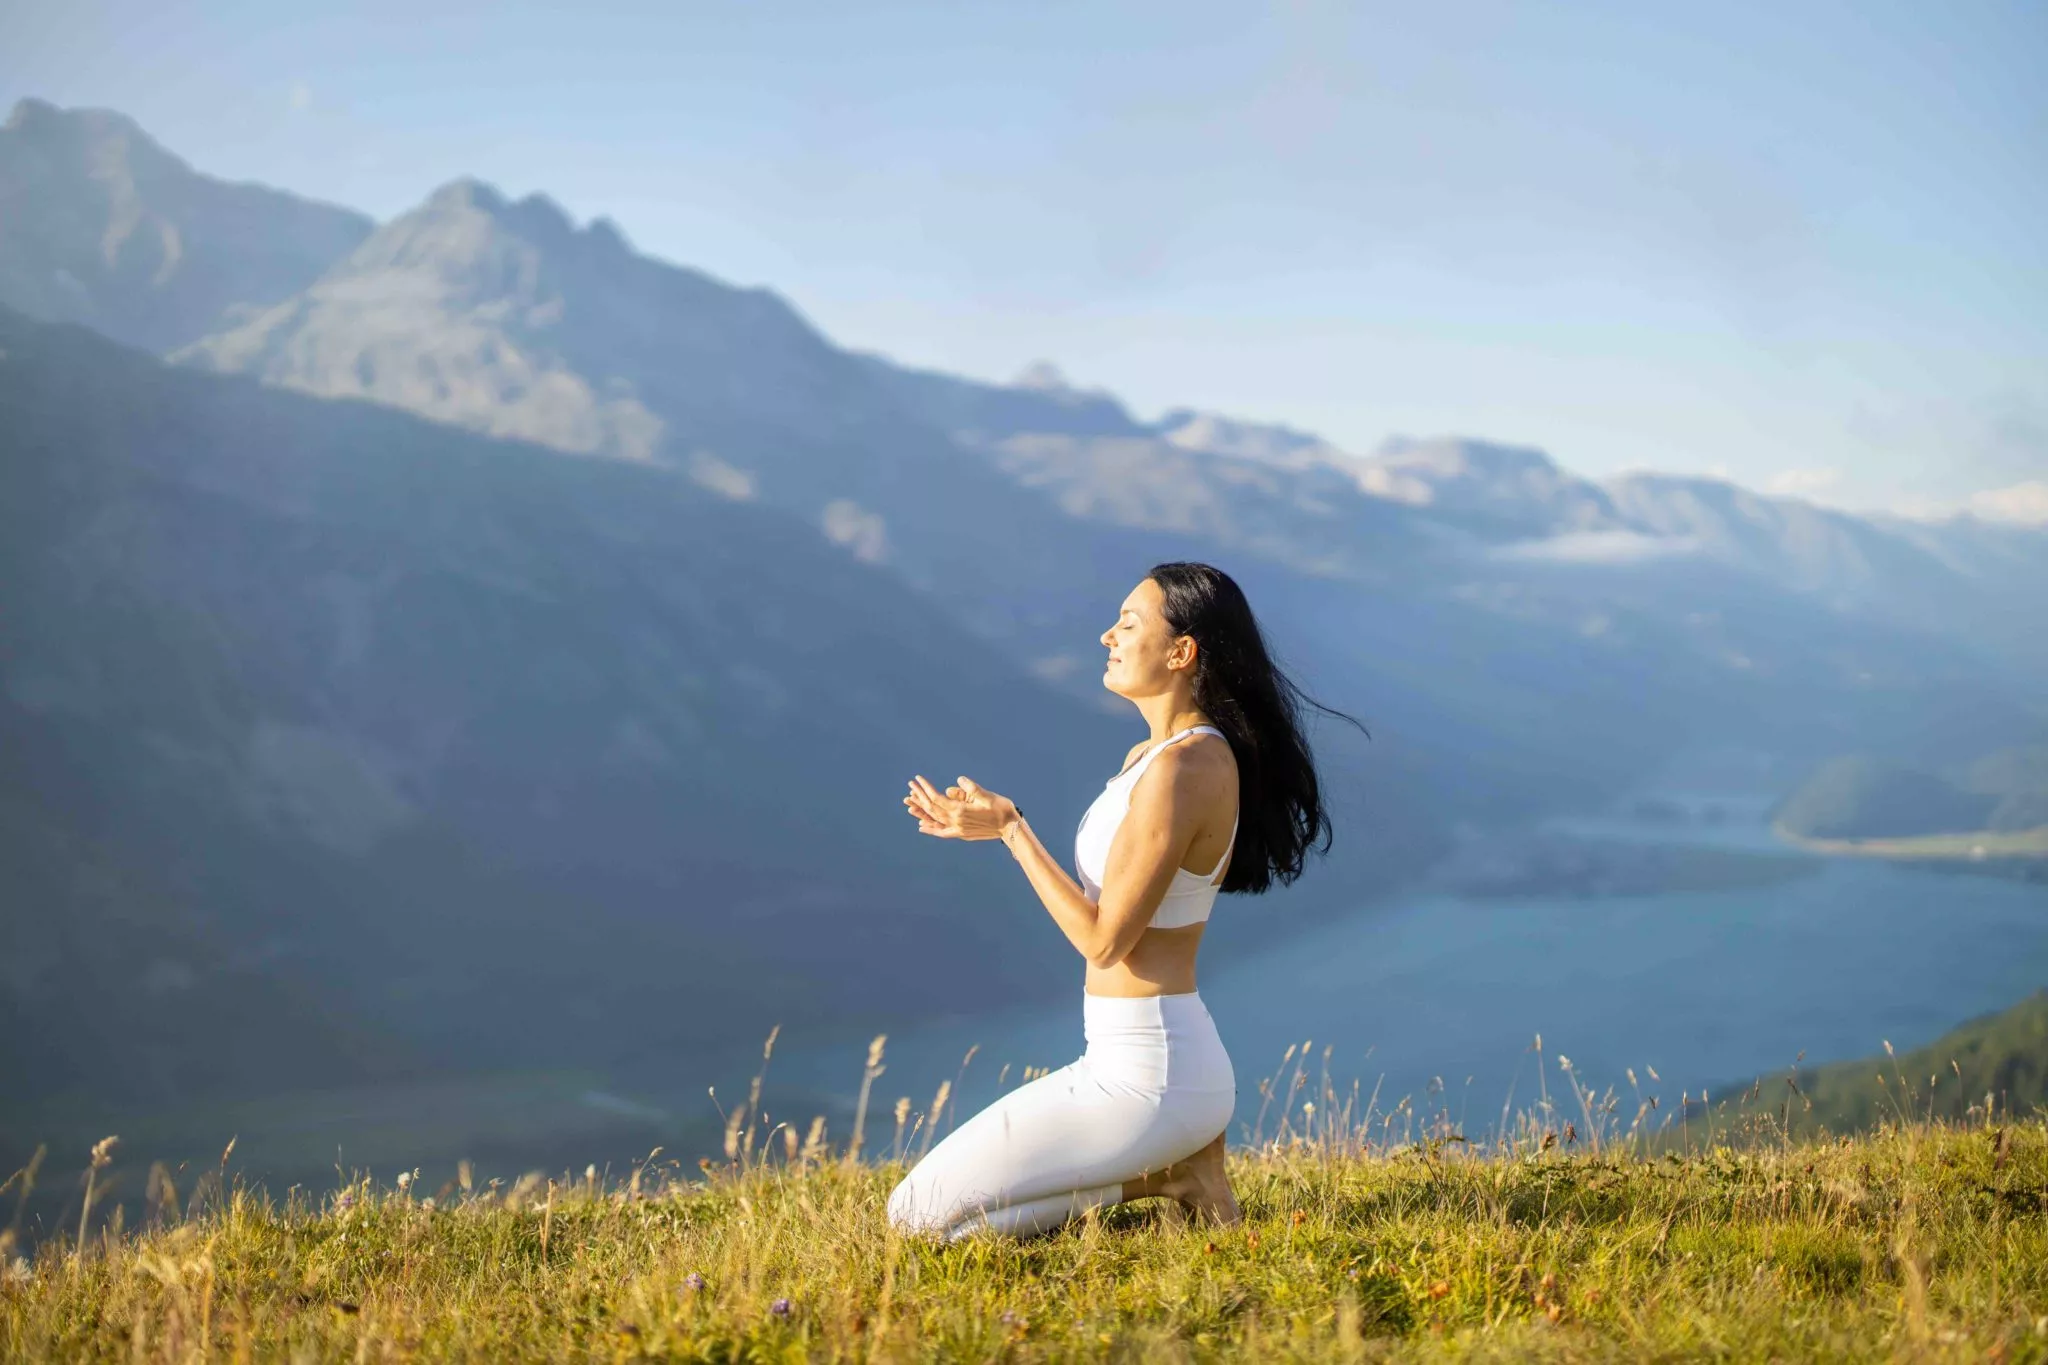 Yoga retreat teacher in Zurich, Switzerland